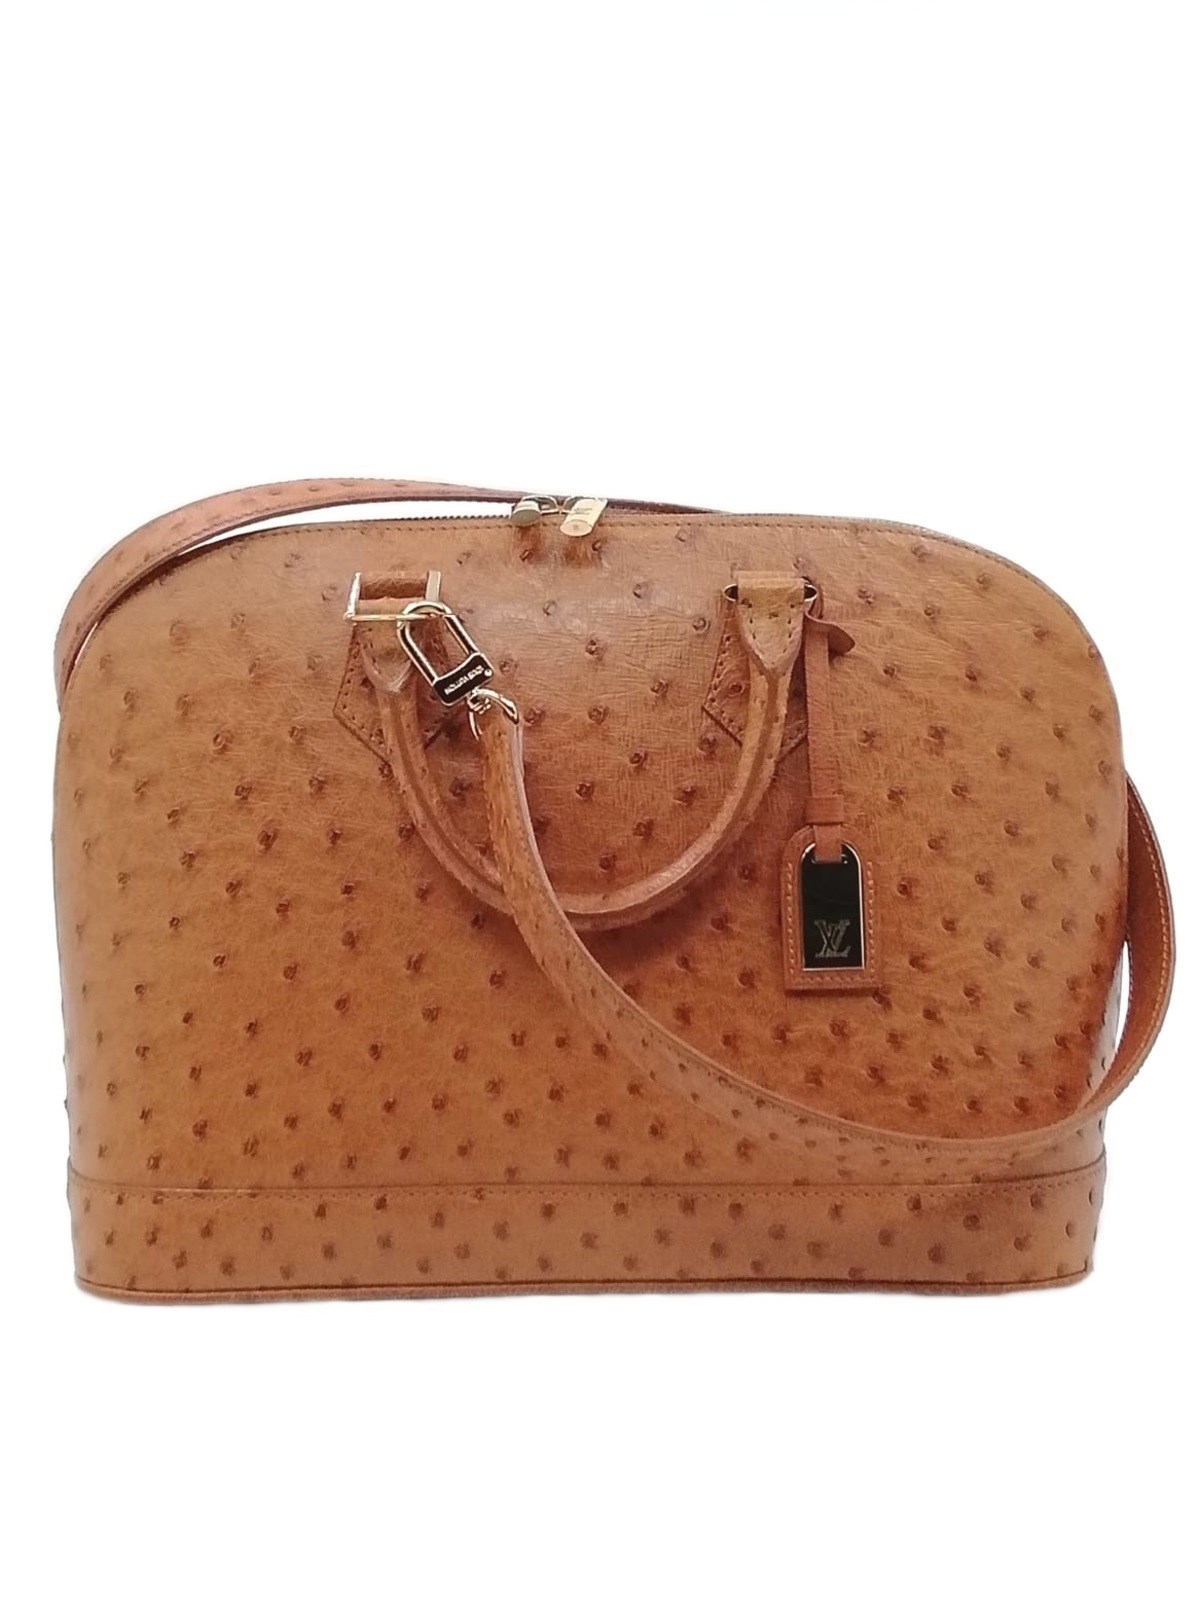 Louis Vuitton Alma Handbag for Sale in Online Auctions